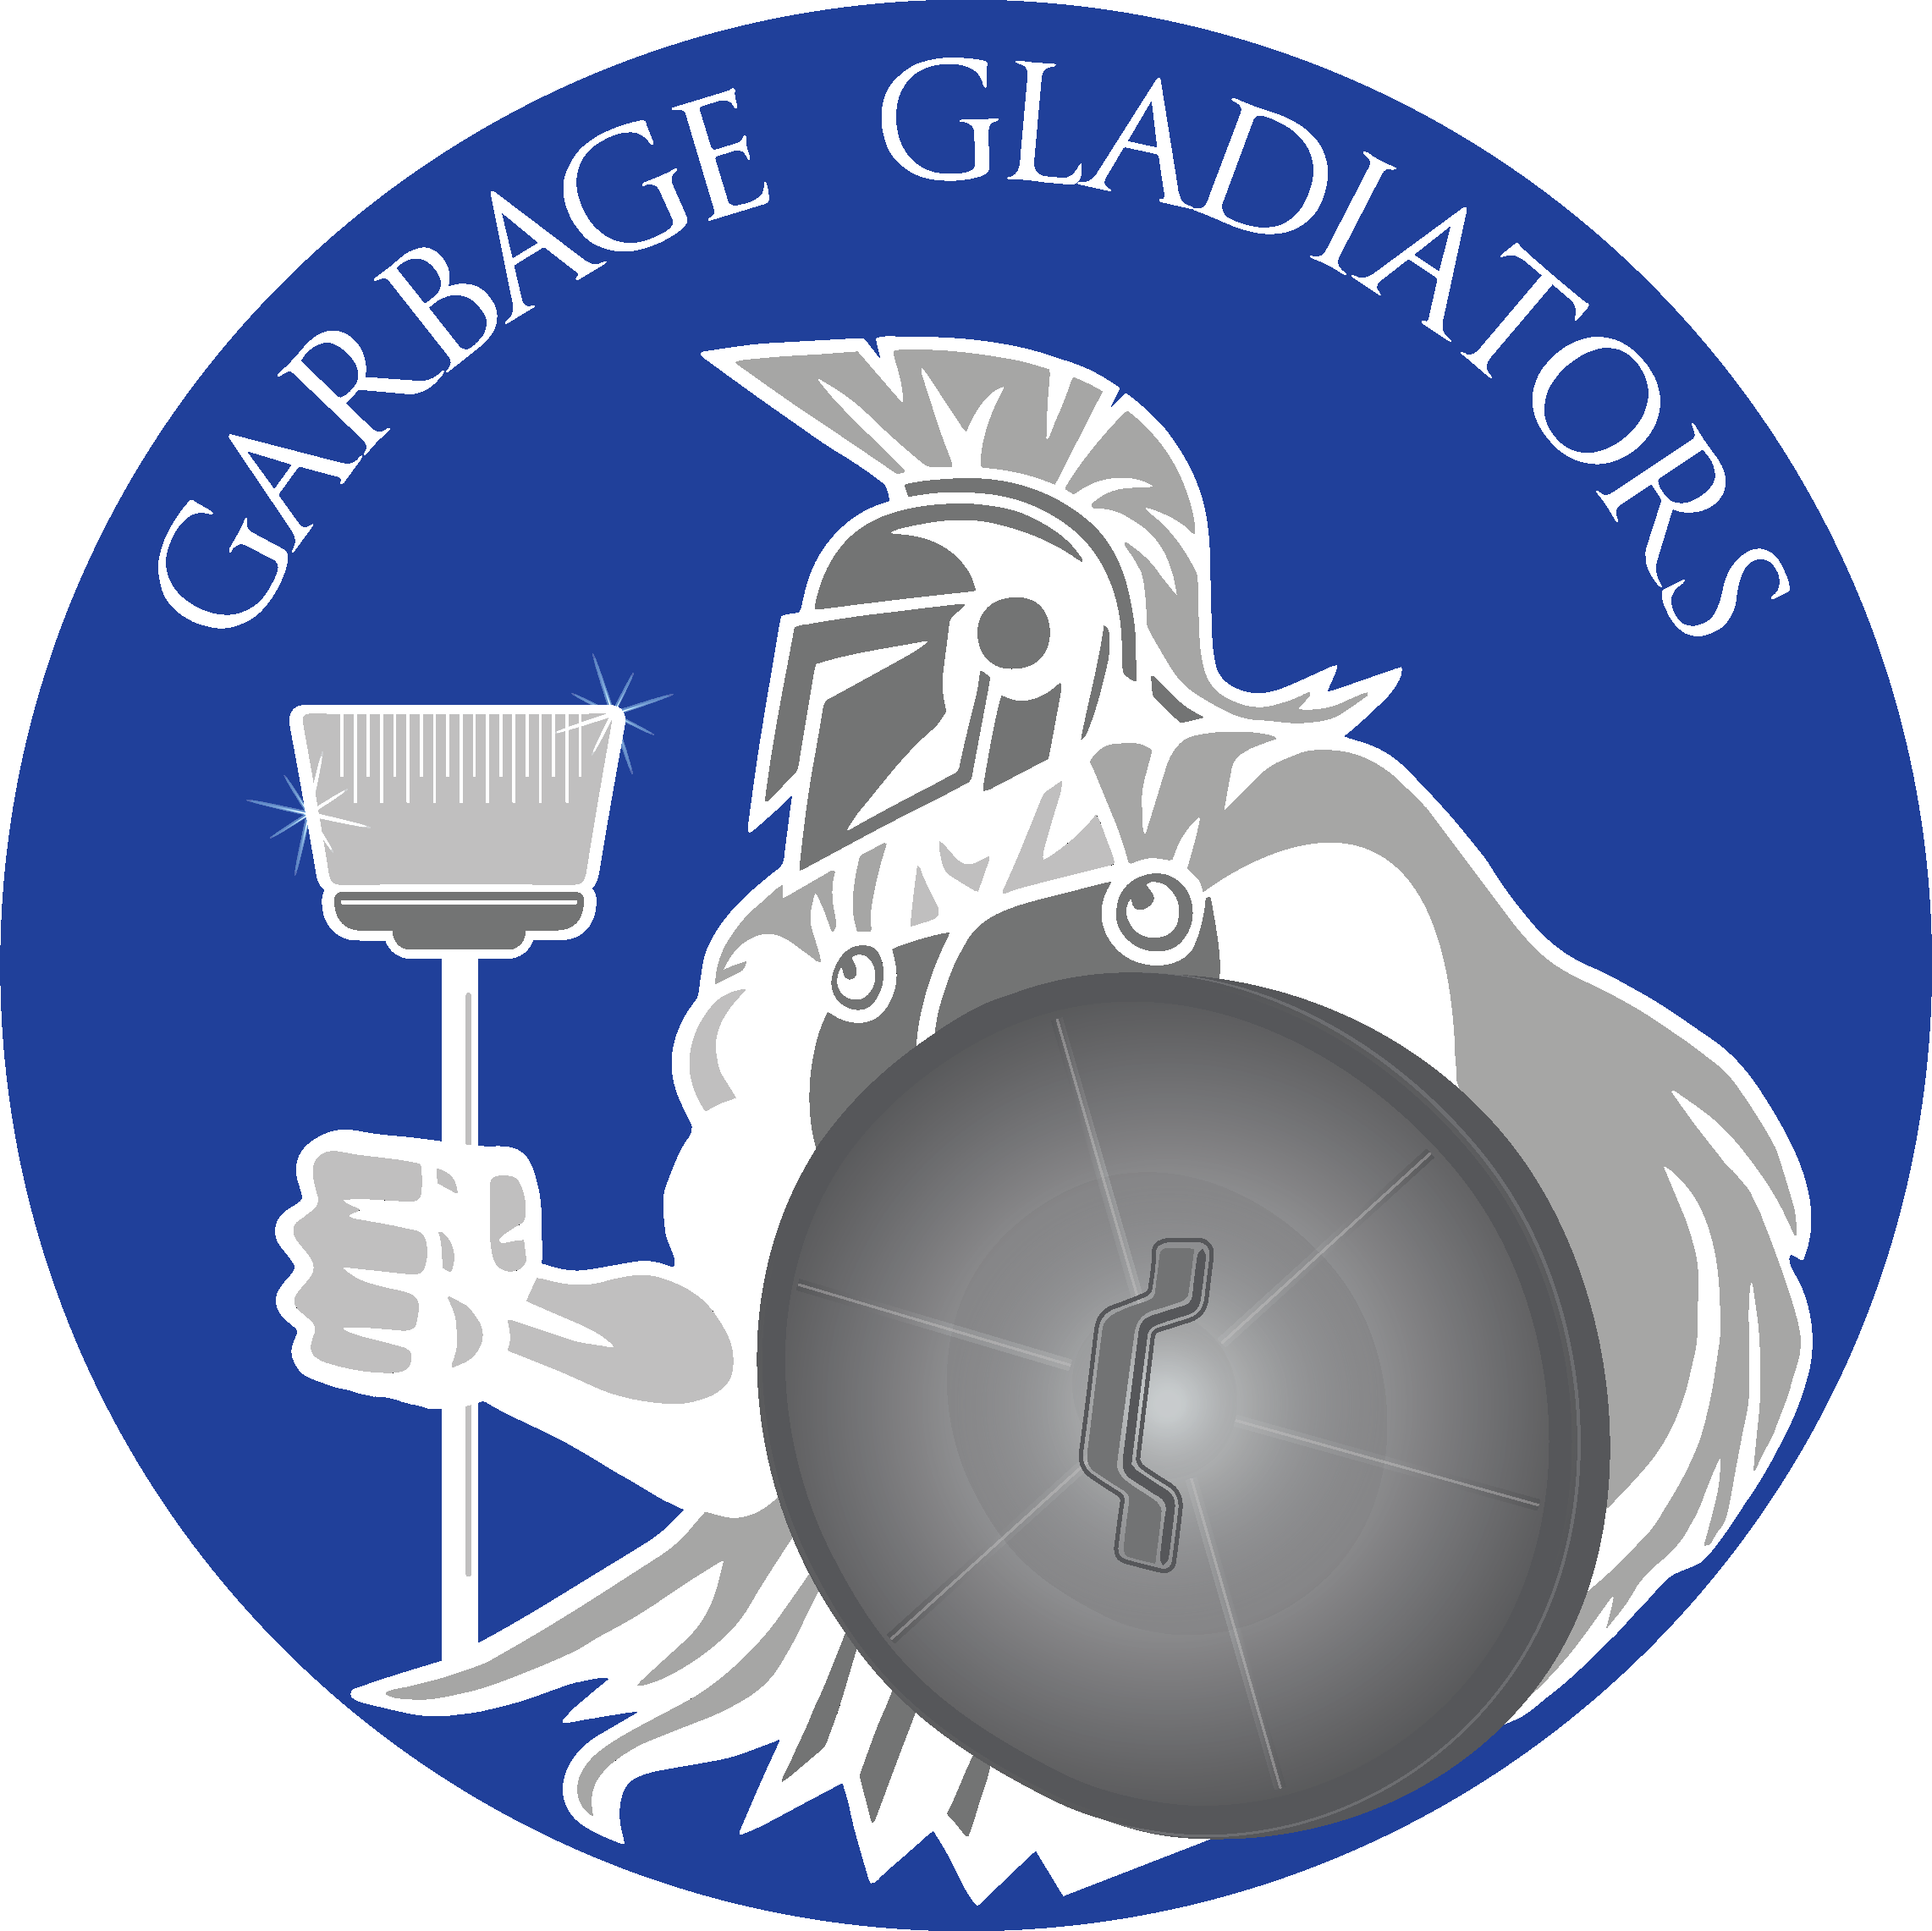 Garbage Gladiators